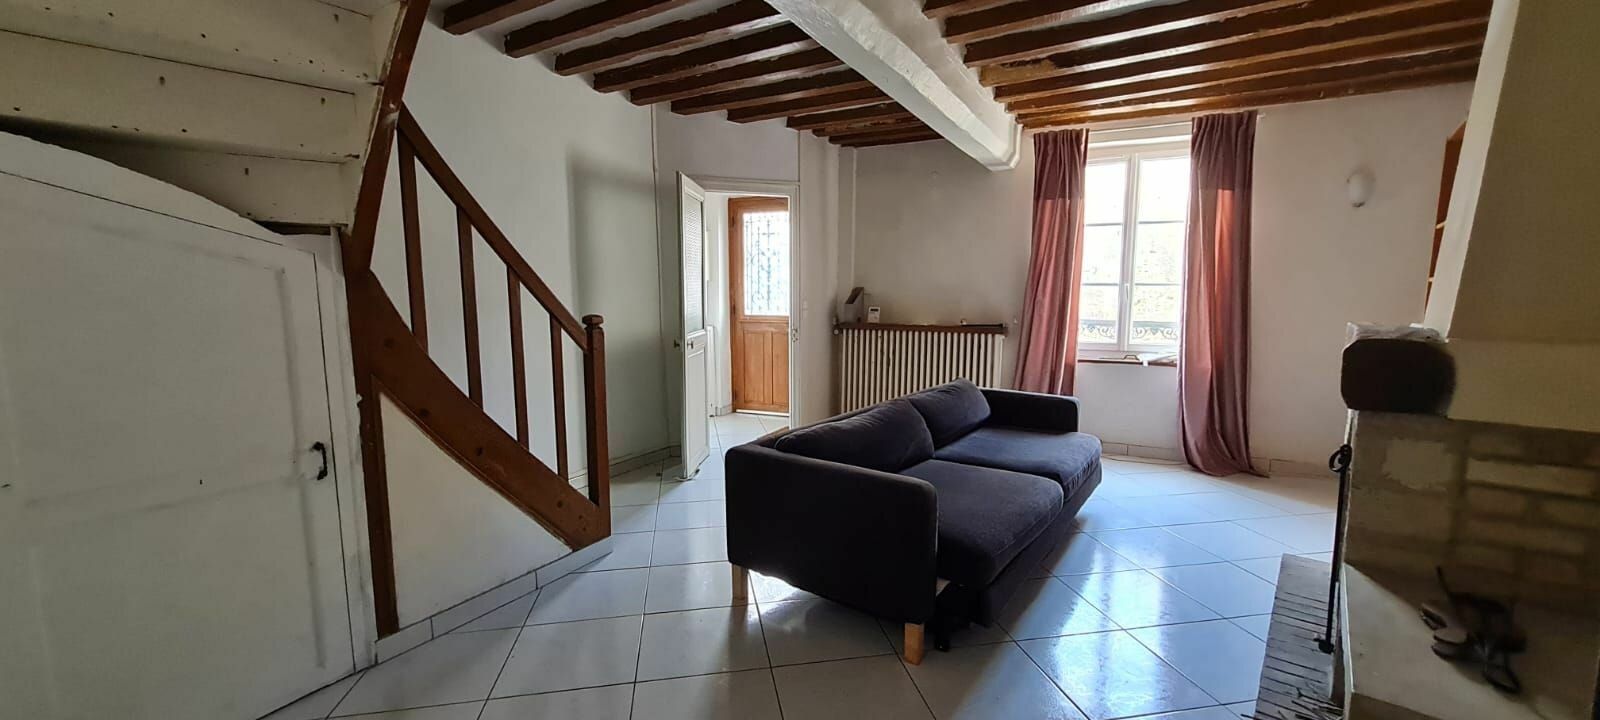 Maison à vendre 2 150m2 à Saâcy-sur-Marne vignette-8